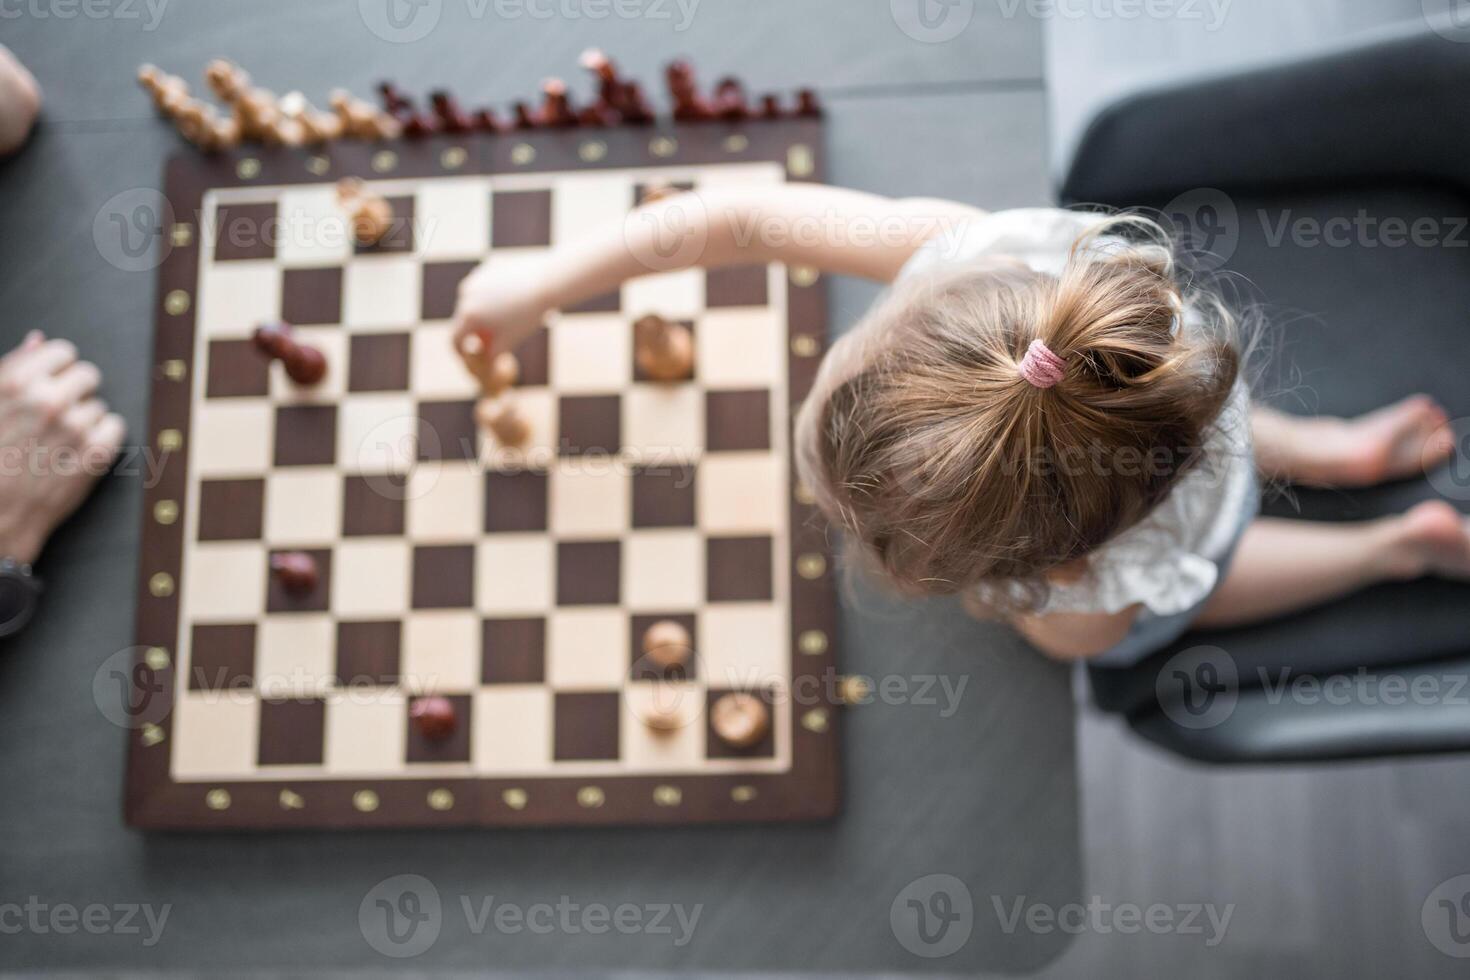 far undervisning hans liten dotter till spela schack på de tabell i Hem kök. de begrepp tidigt barndom utveckling och utbildning. familj fritid, kommunikation och rekreation. foto